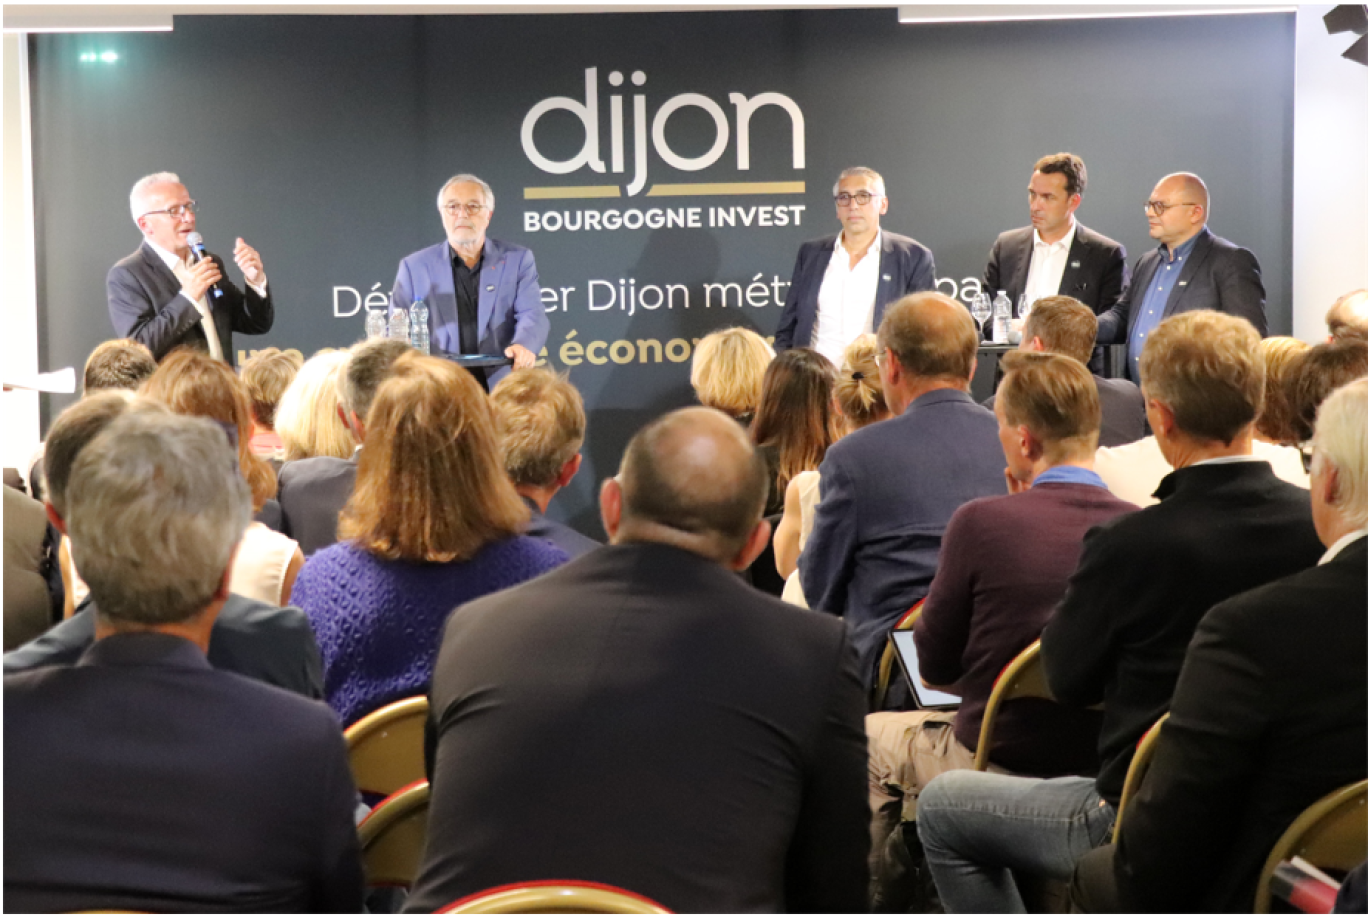 (c) Dijon Bourgogne Invest 